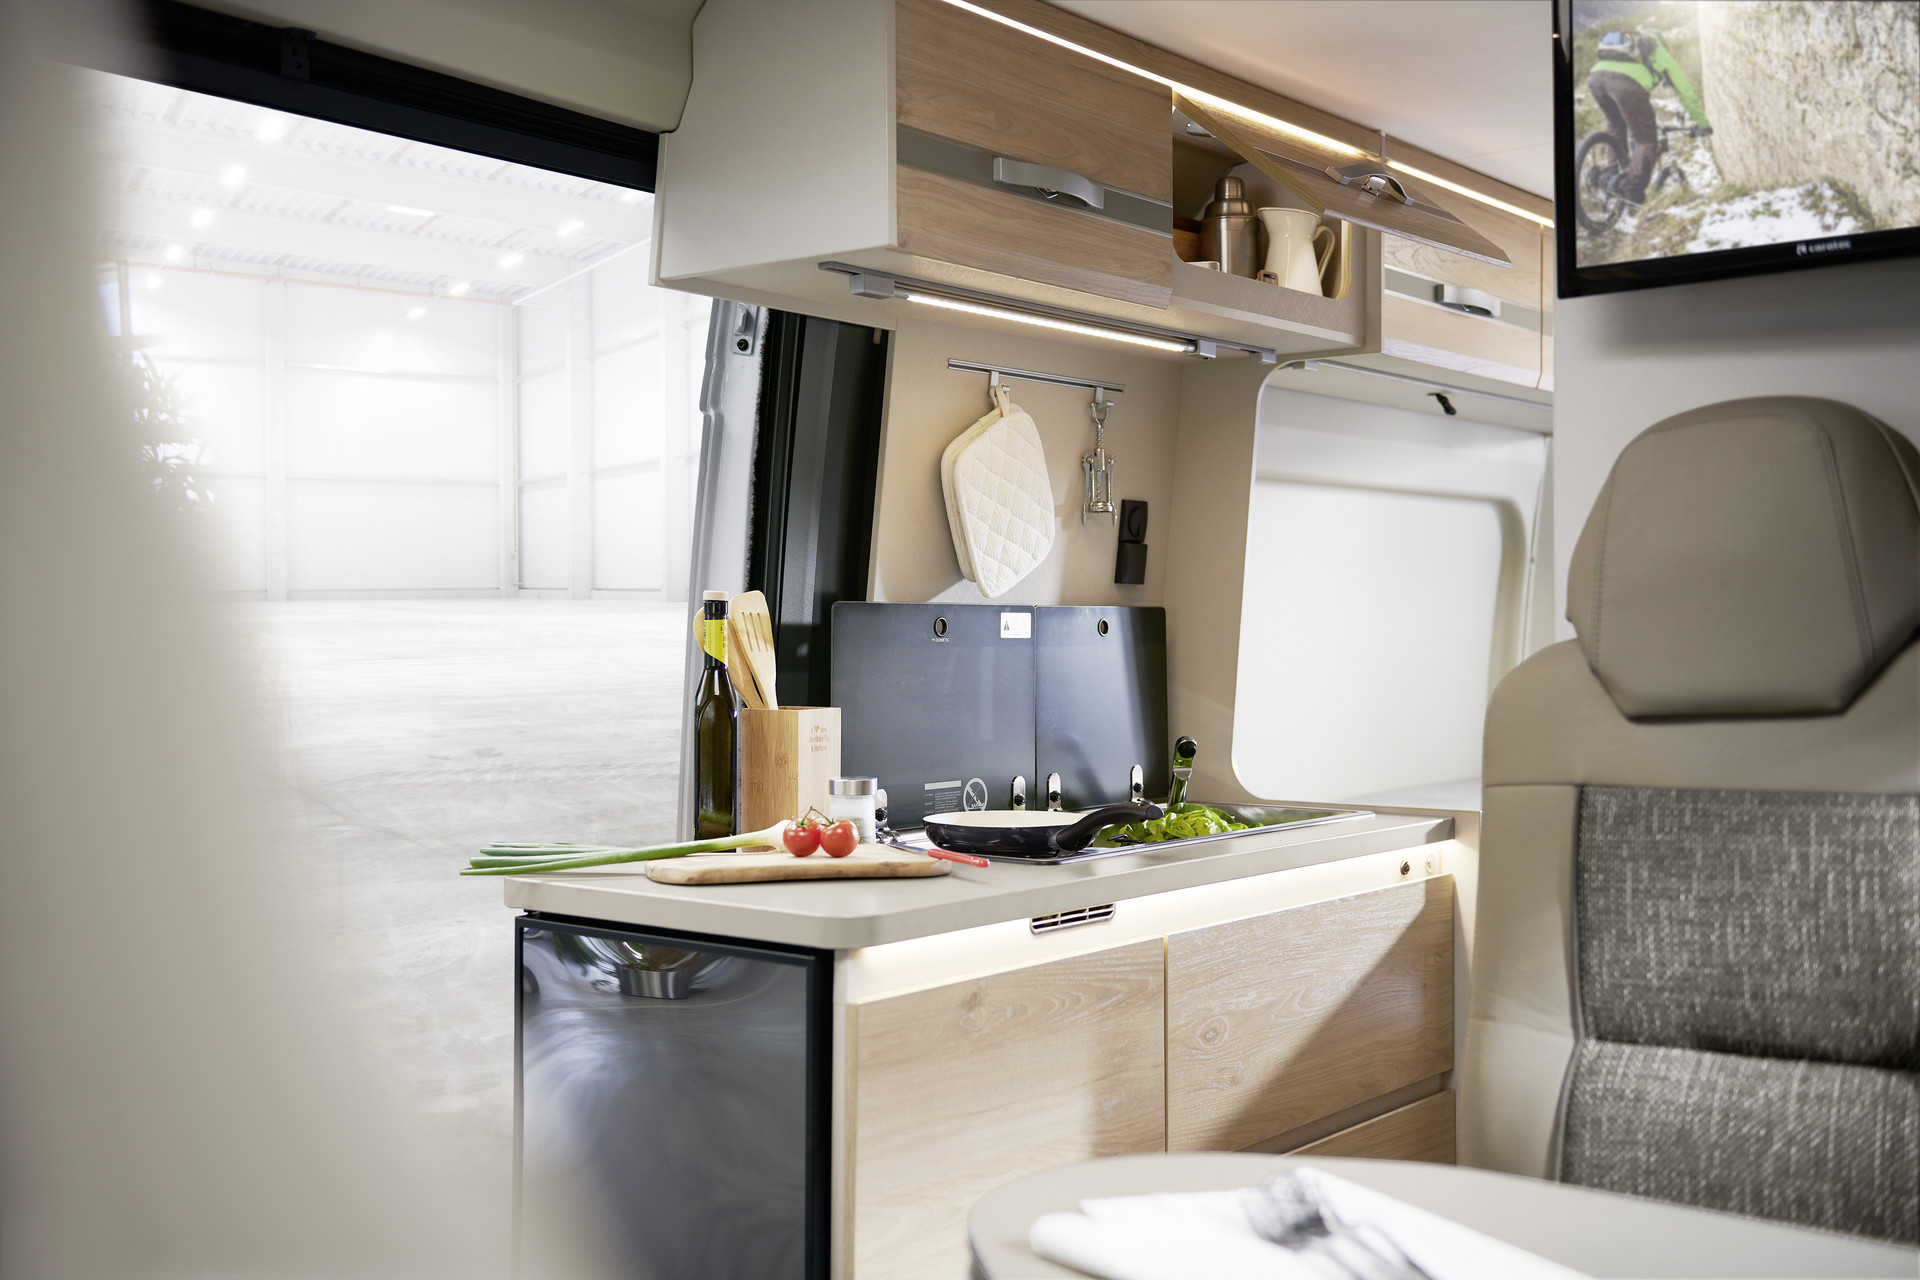 Cuisinez (presque) comme à la maison. Exploitation optimale de l’espace et des surfaces. Grâce à sa porte s’ouvrant à 180°, le grand réfrigérateur est facilement accessible de l’intérieur comme de l’extérieur.